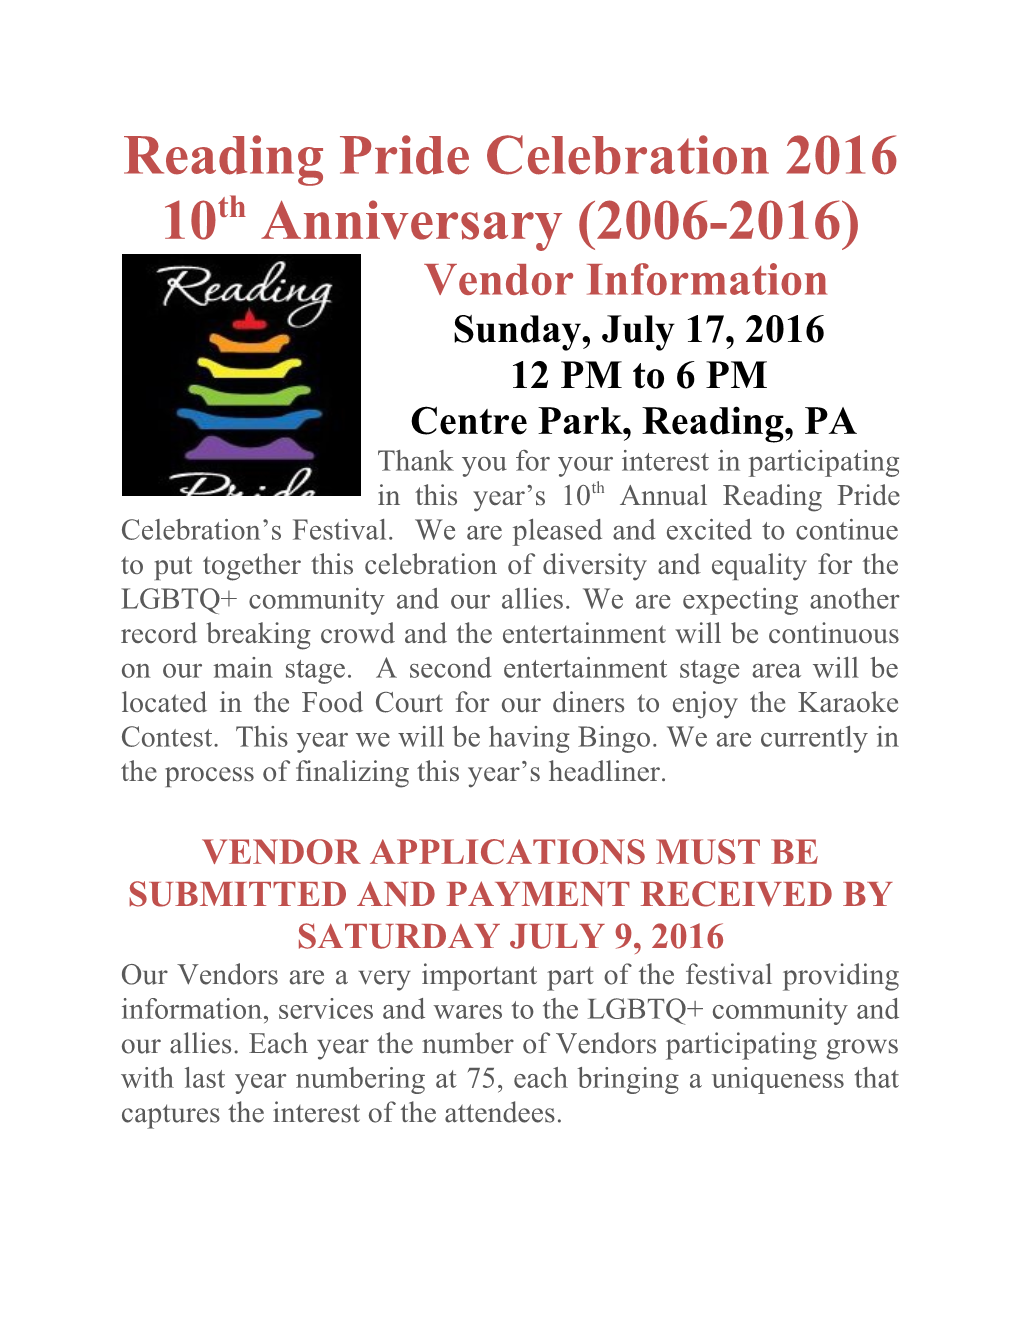 Reading Pride Celebration 2016 10Th Anniversary (2006-2016)